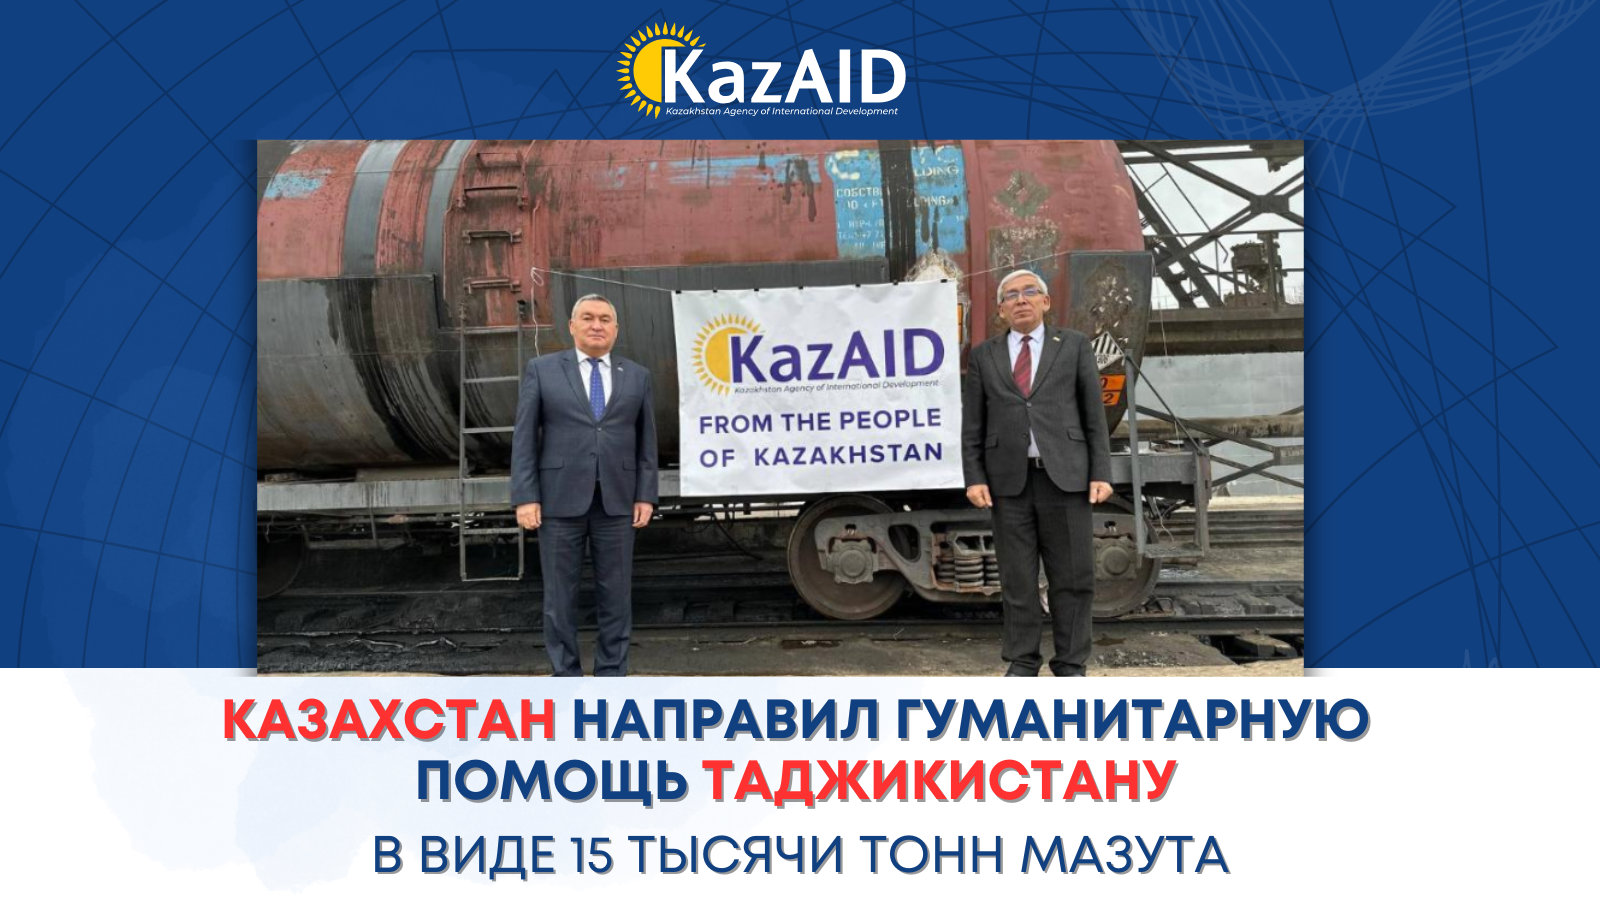 Казахстан направил гуманитарную помощь Таджикистану в виде 15 тысячи тонн мазута